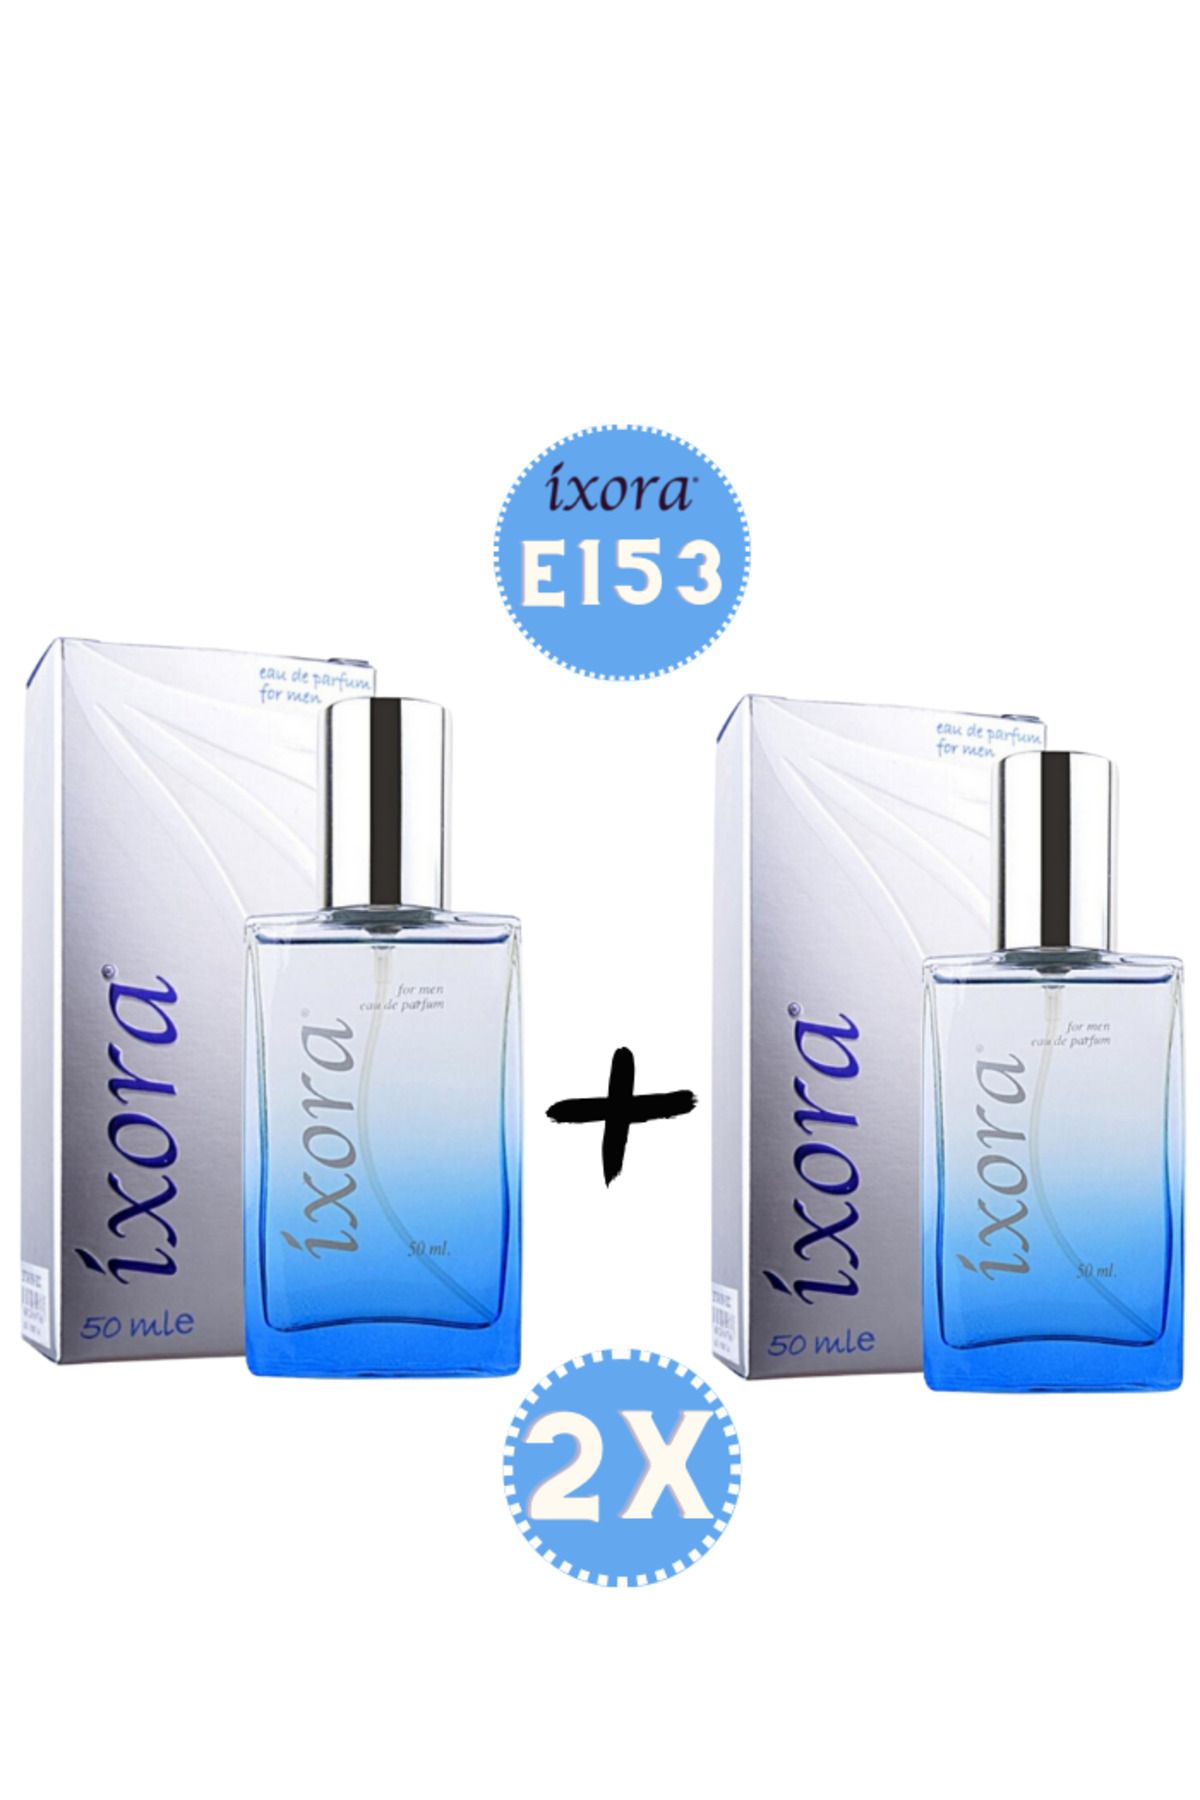 Ixora E153x2 (2 adet ) Erkek Parfüm 50 ml Edp